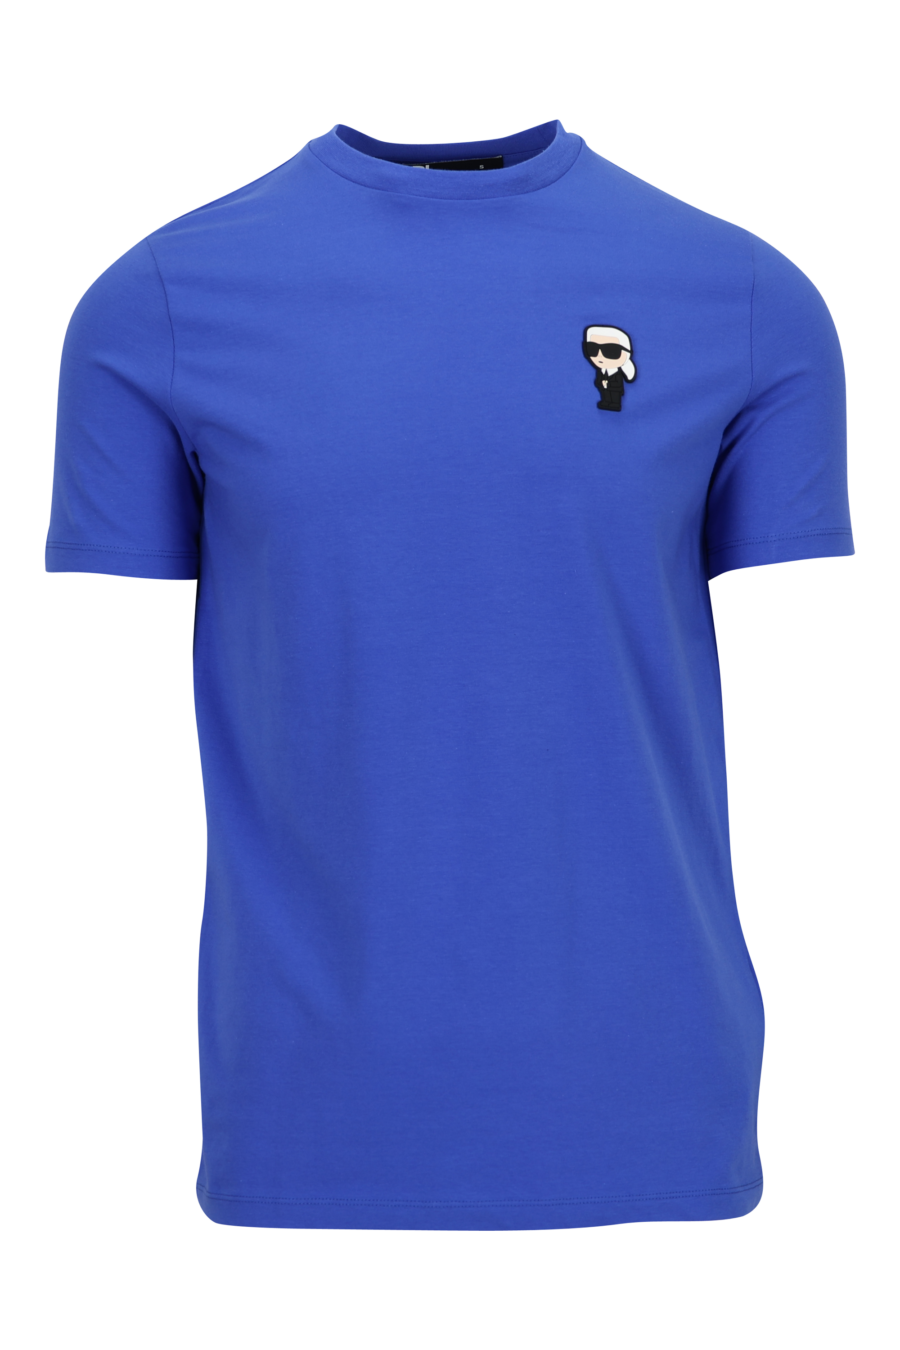 Camiseta azul eléctrico con minilogo "karl" en goma - 4062226972949